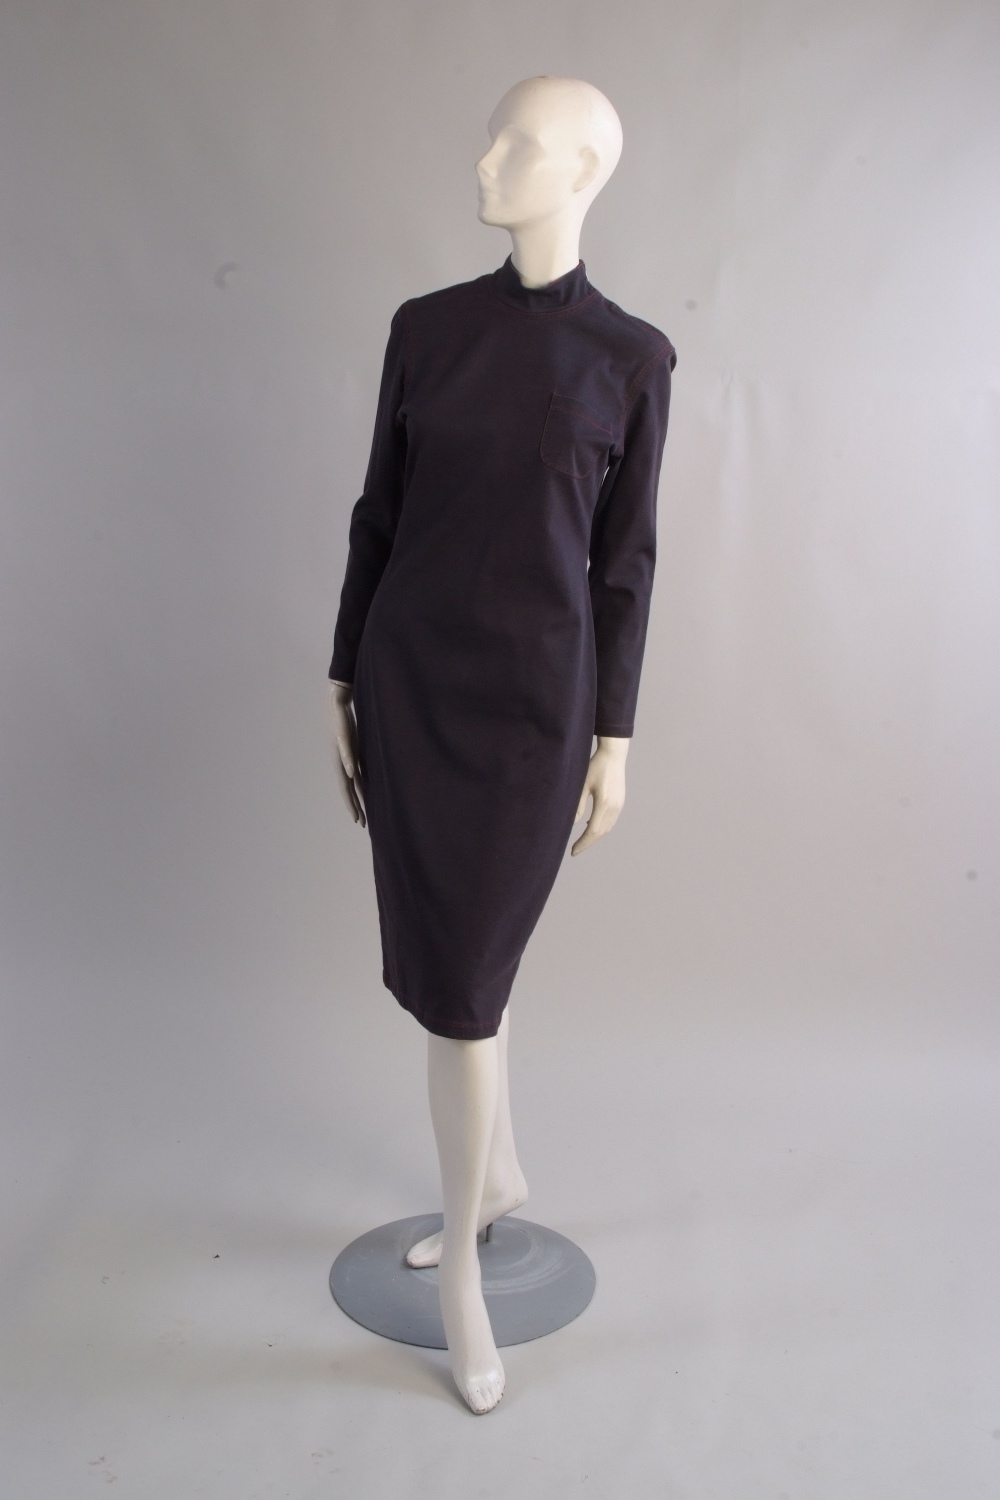 A 'Jean Paul Gaultier' jean dress.  Soft